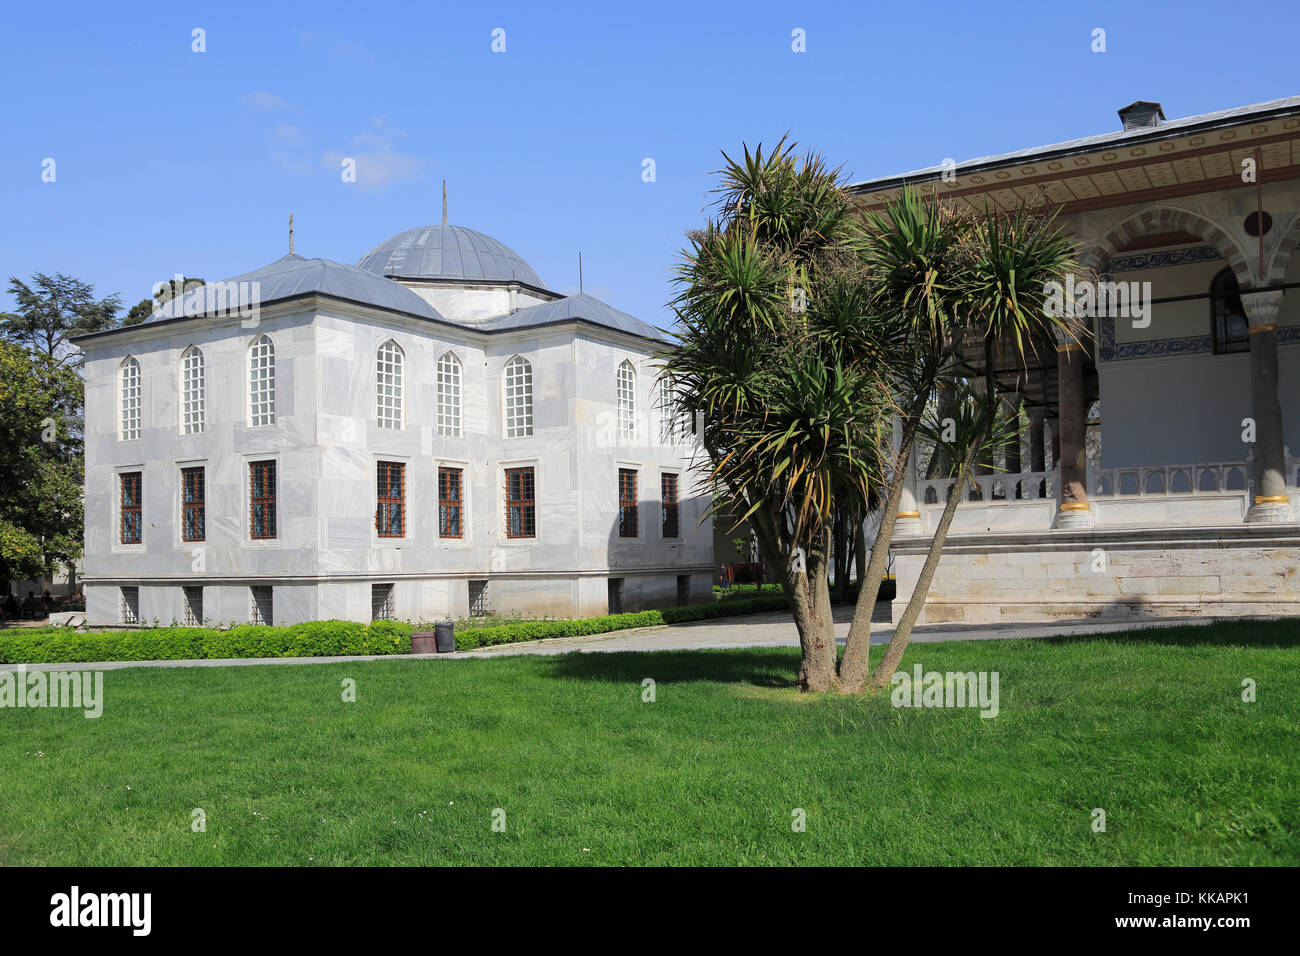 Biblioteca del Sultán Ahmed III, Museo del Palacio Topkapi, Patrimonio de la Humanidad de la UNESCO, Estambul, Turquía, Europa Foto de stock